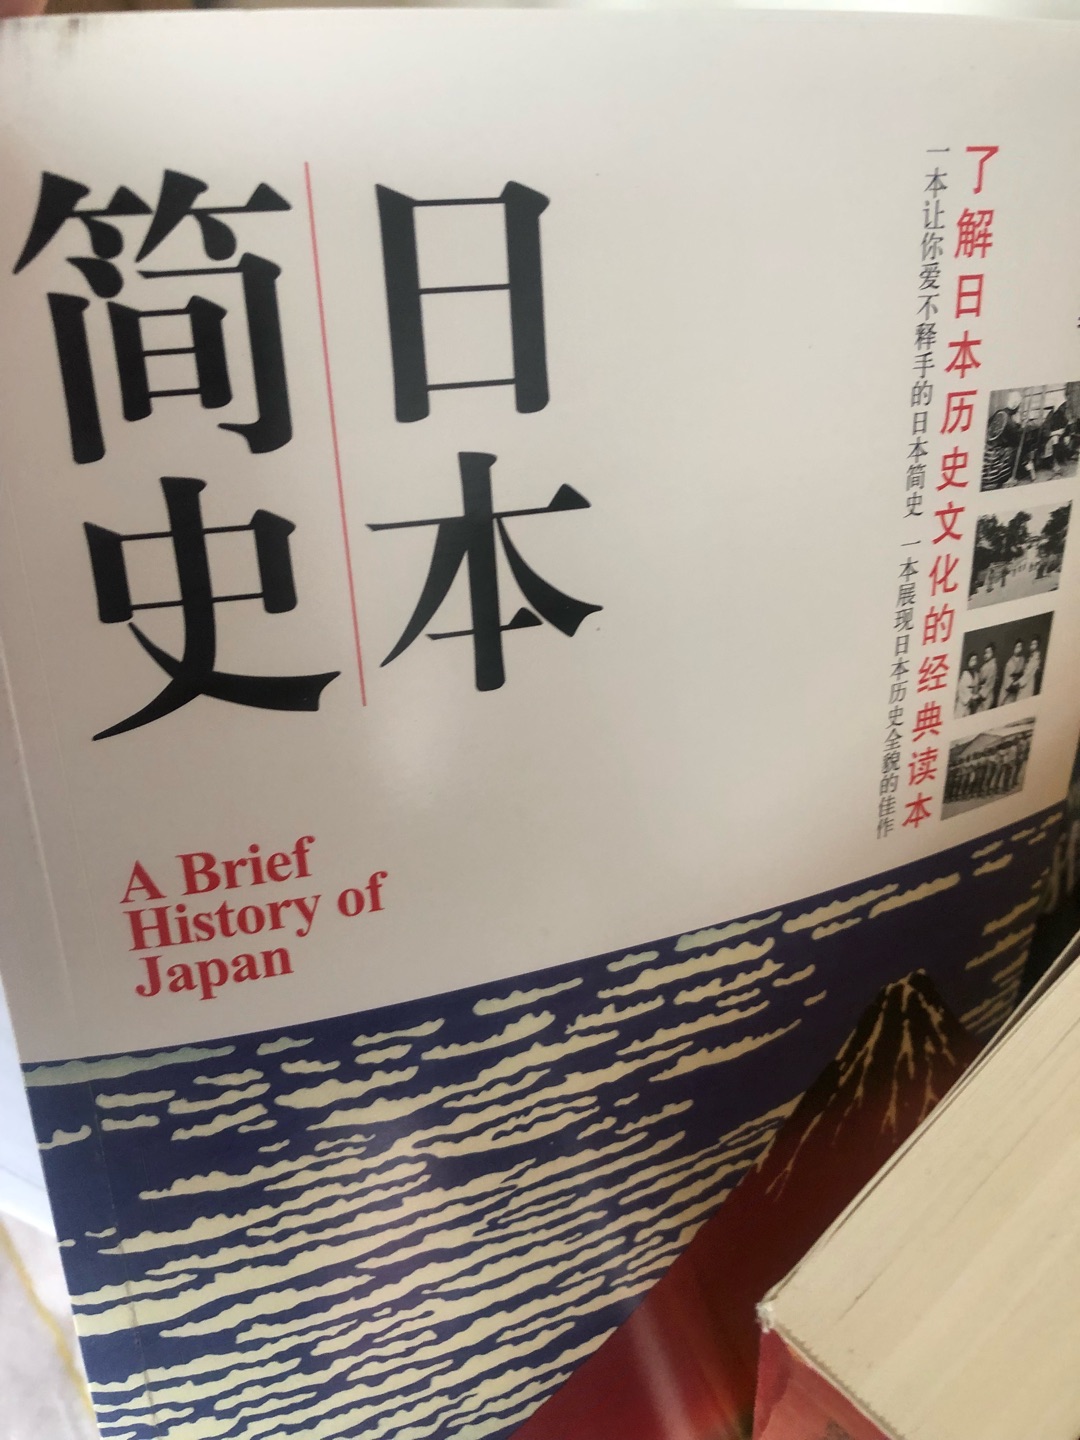 很不错的一本书，介绍日本，结合文字和配图很好理解